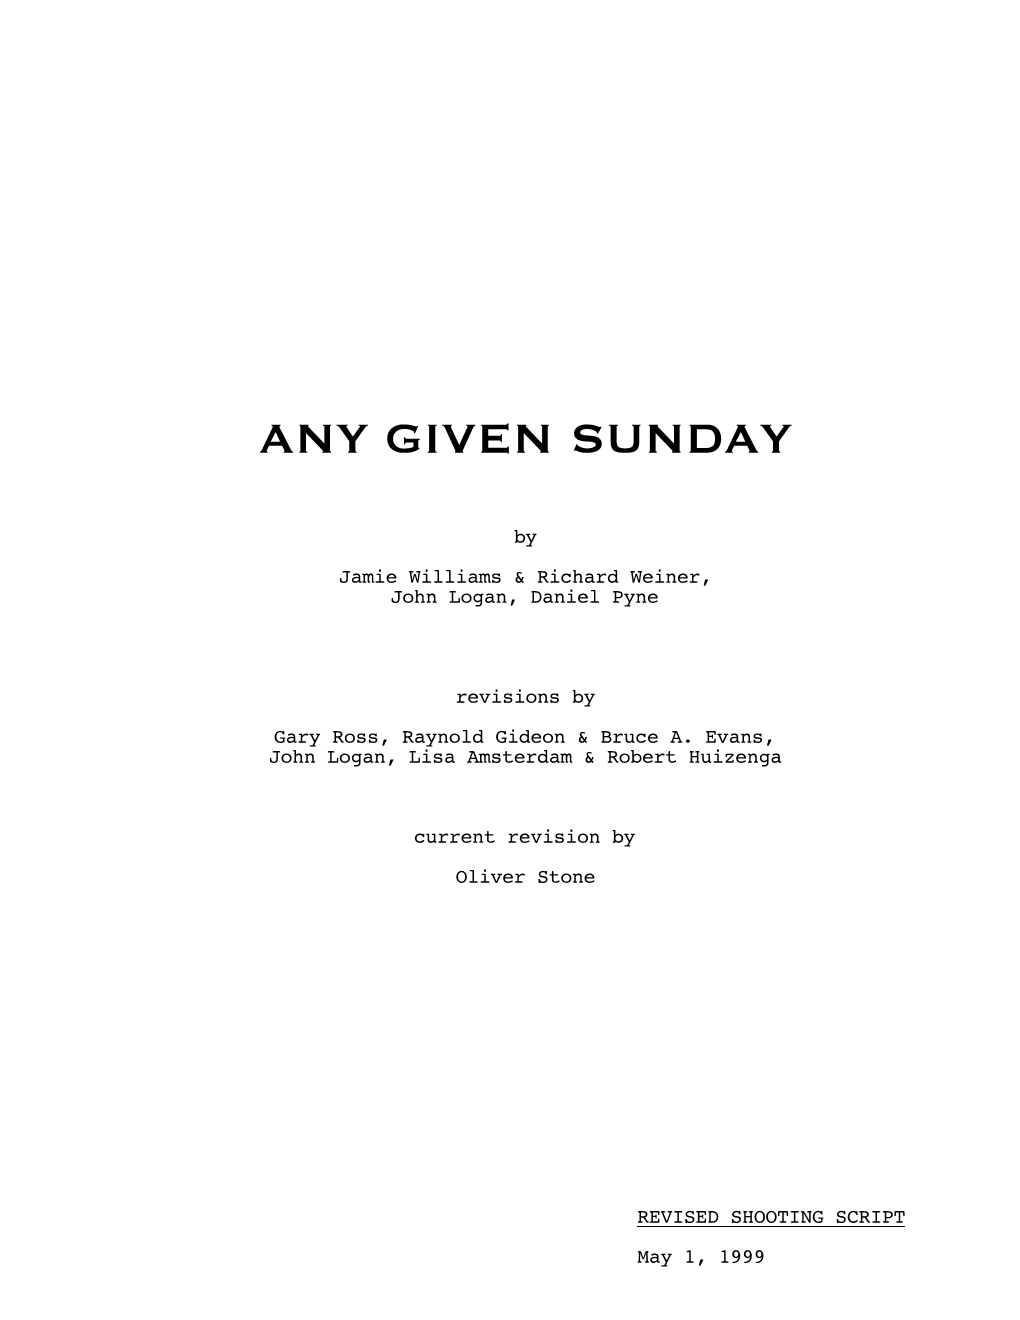 Any Given Sunday